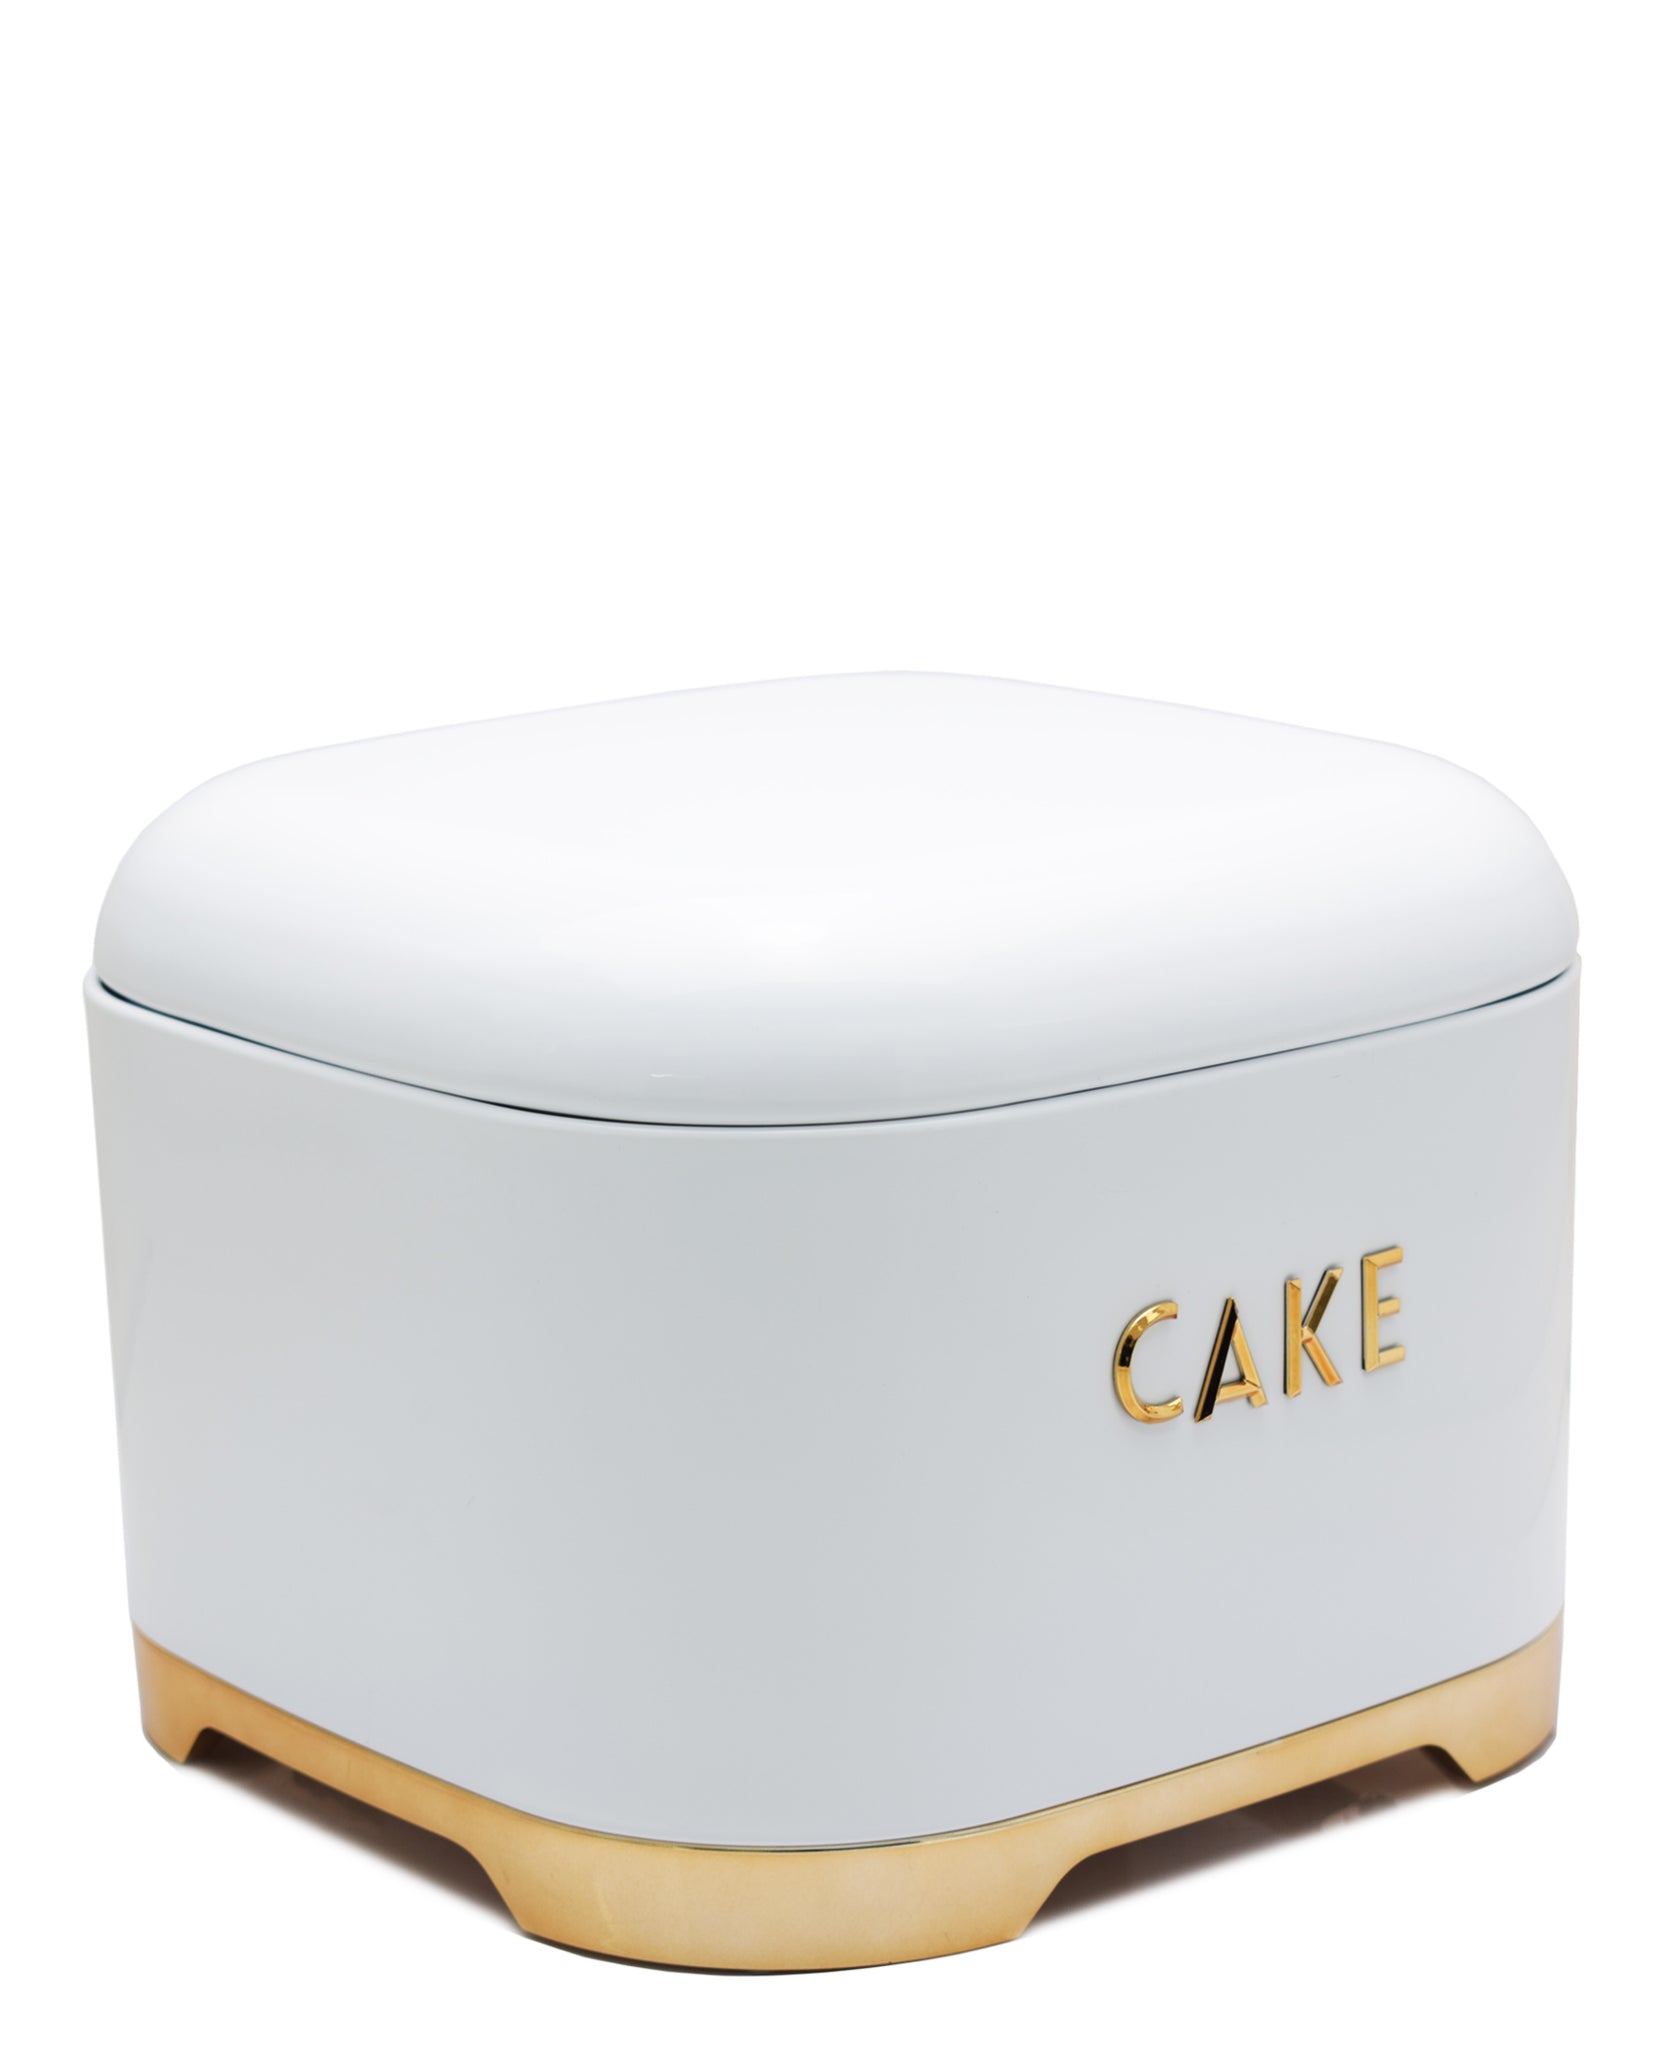 Retro Cake Tin - White & Rose Gold